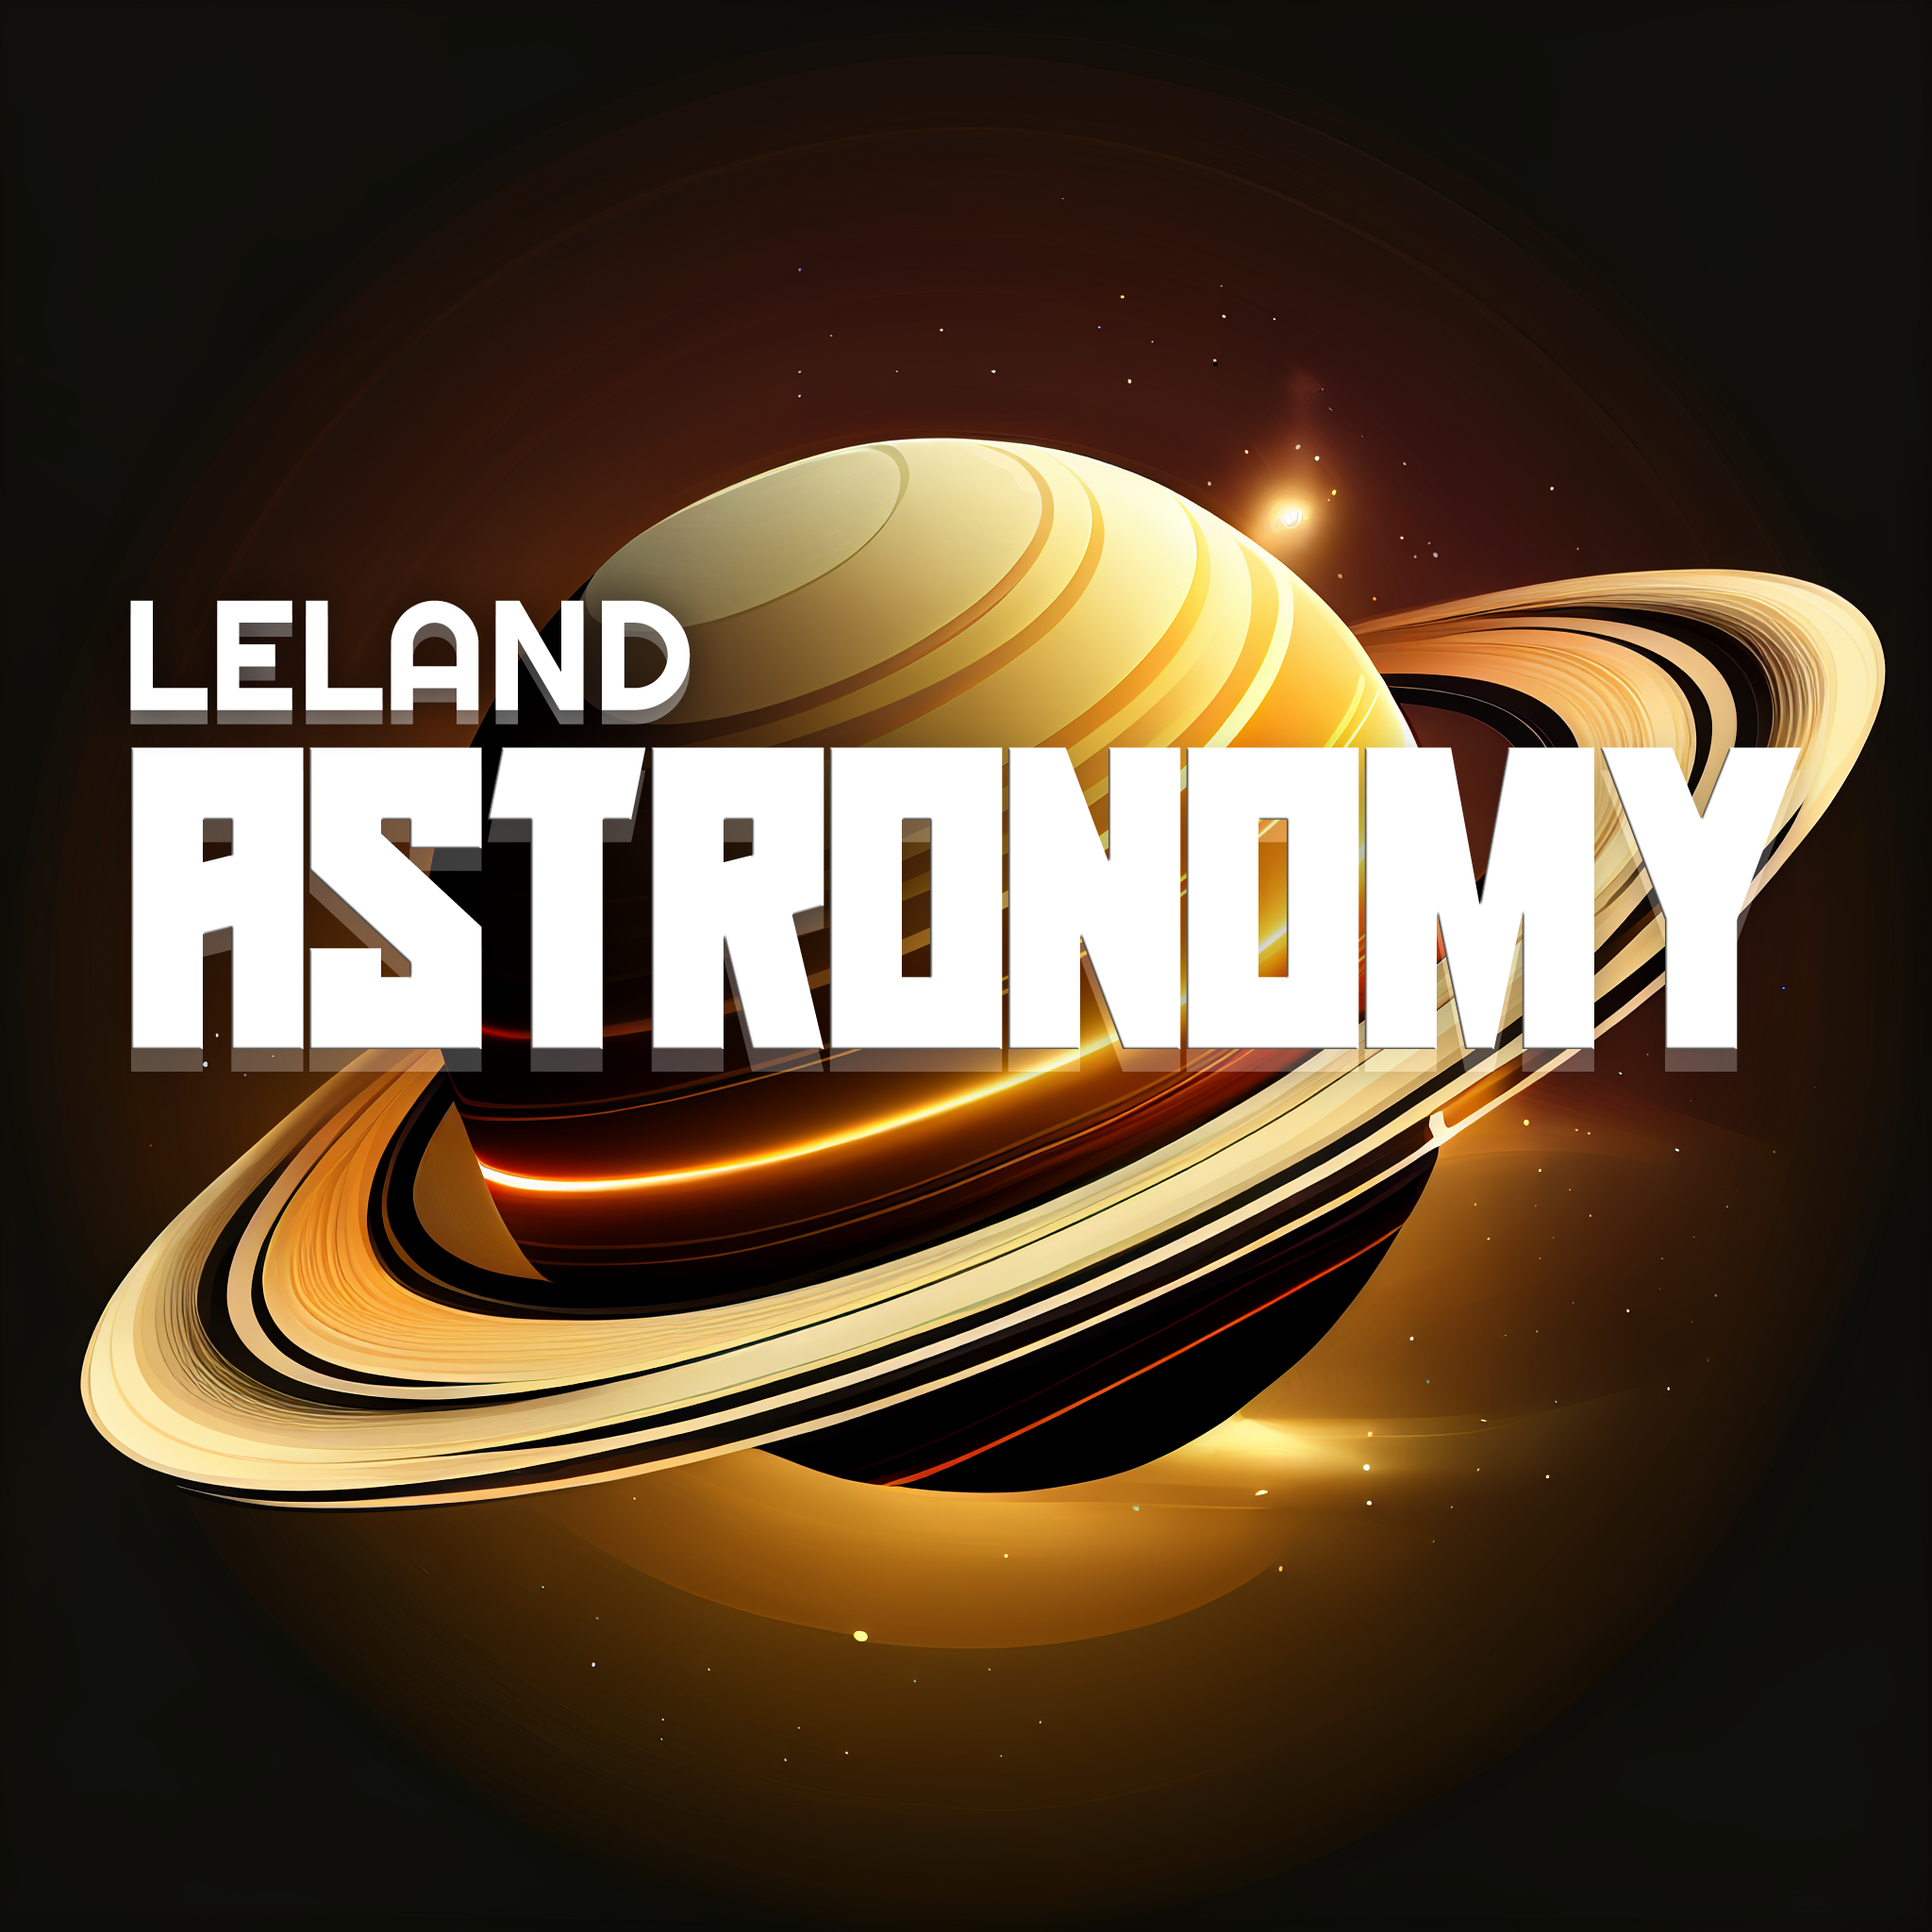 Leland Astronomy Club